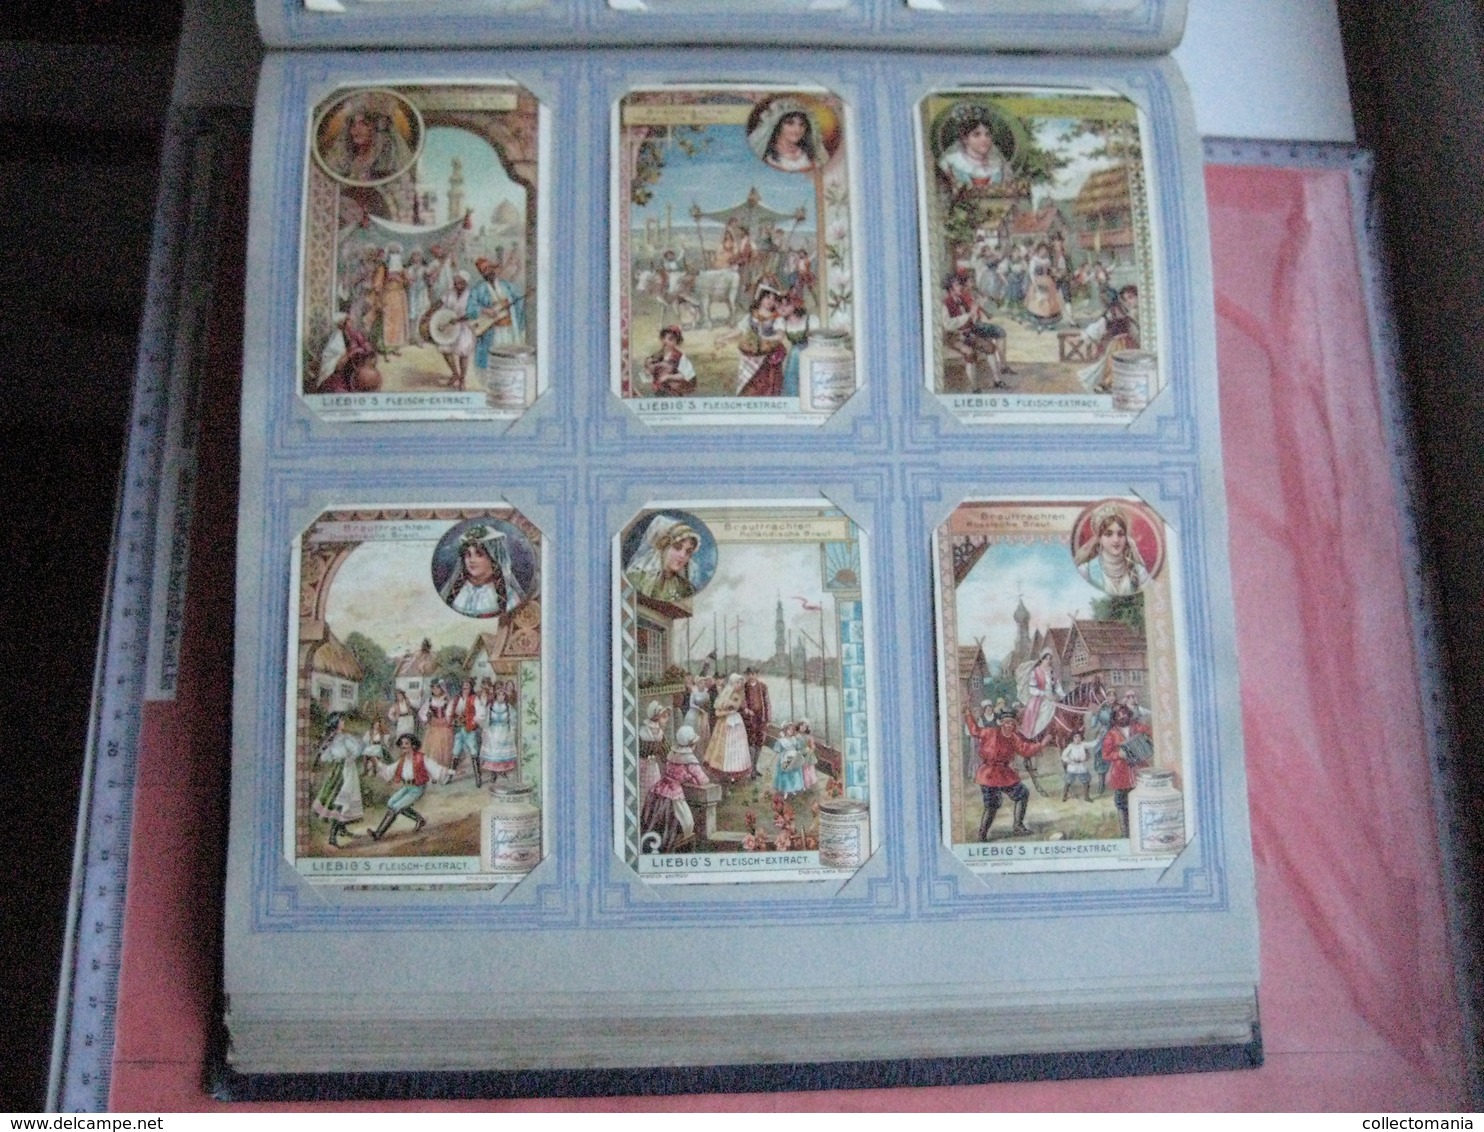 mooi Liebig Album anno 1901 à 1905, het zijn  50 complete reeksen van elke 6 kaarten 7cmX11cm, allemaal zeer goede staat